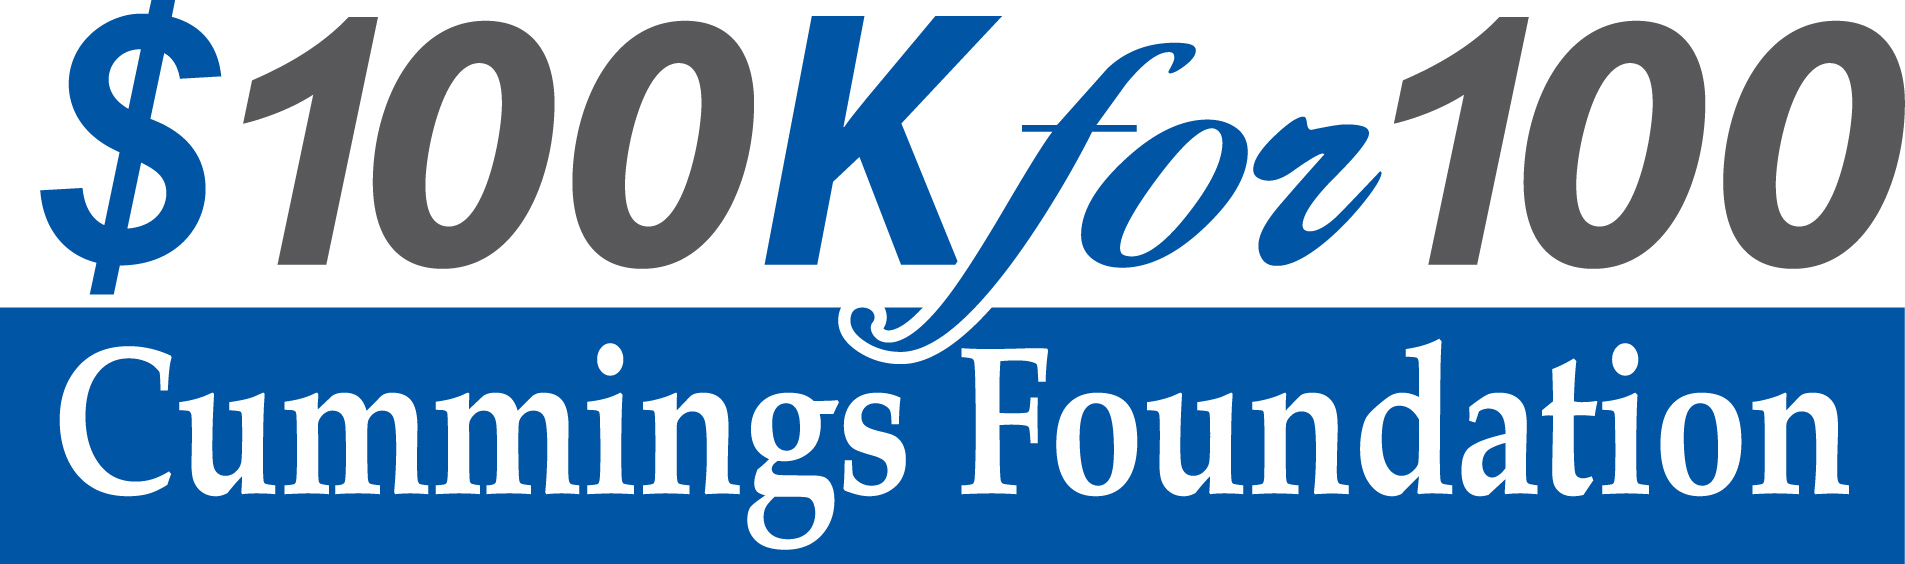 $100k for 100 Cummings Foundation logo